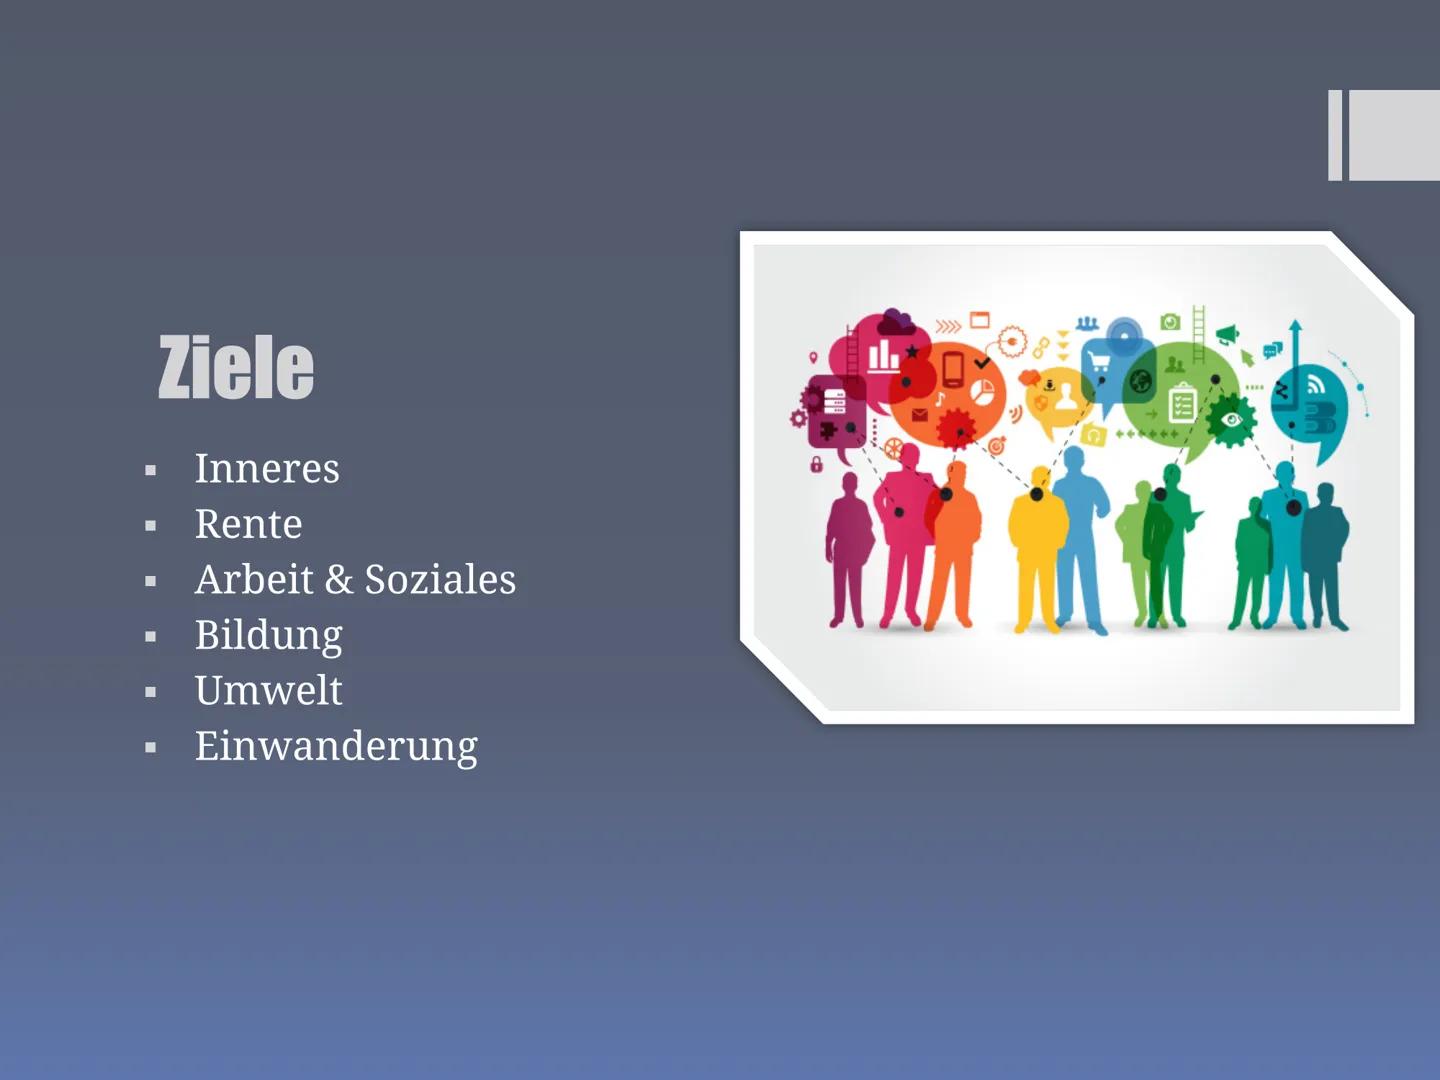 Präsentation über
CDU/CSU
Hrisiyana, Samerah, Hadil, Cosmina, Noor, Nada ■
■
■
■
■
Inhaltsverzeichnis:
Wer sind CDU und CSU?
Aufgaben im Bun